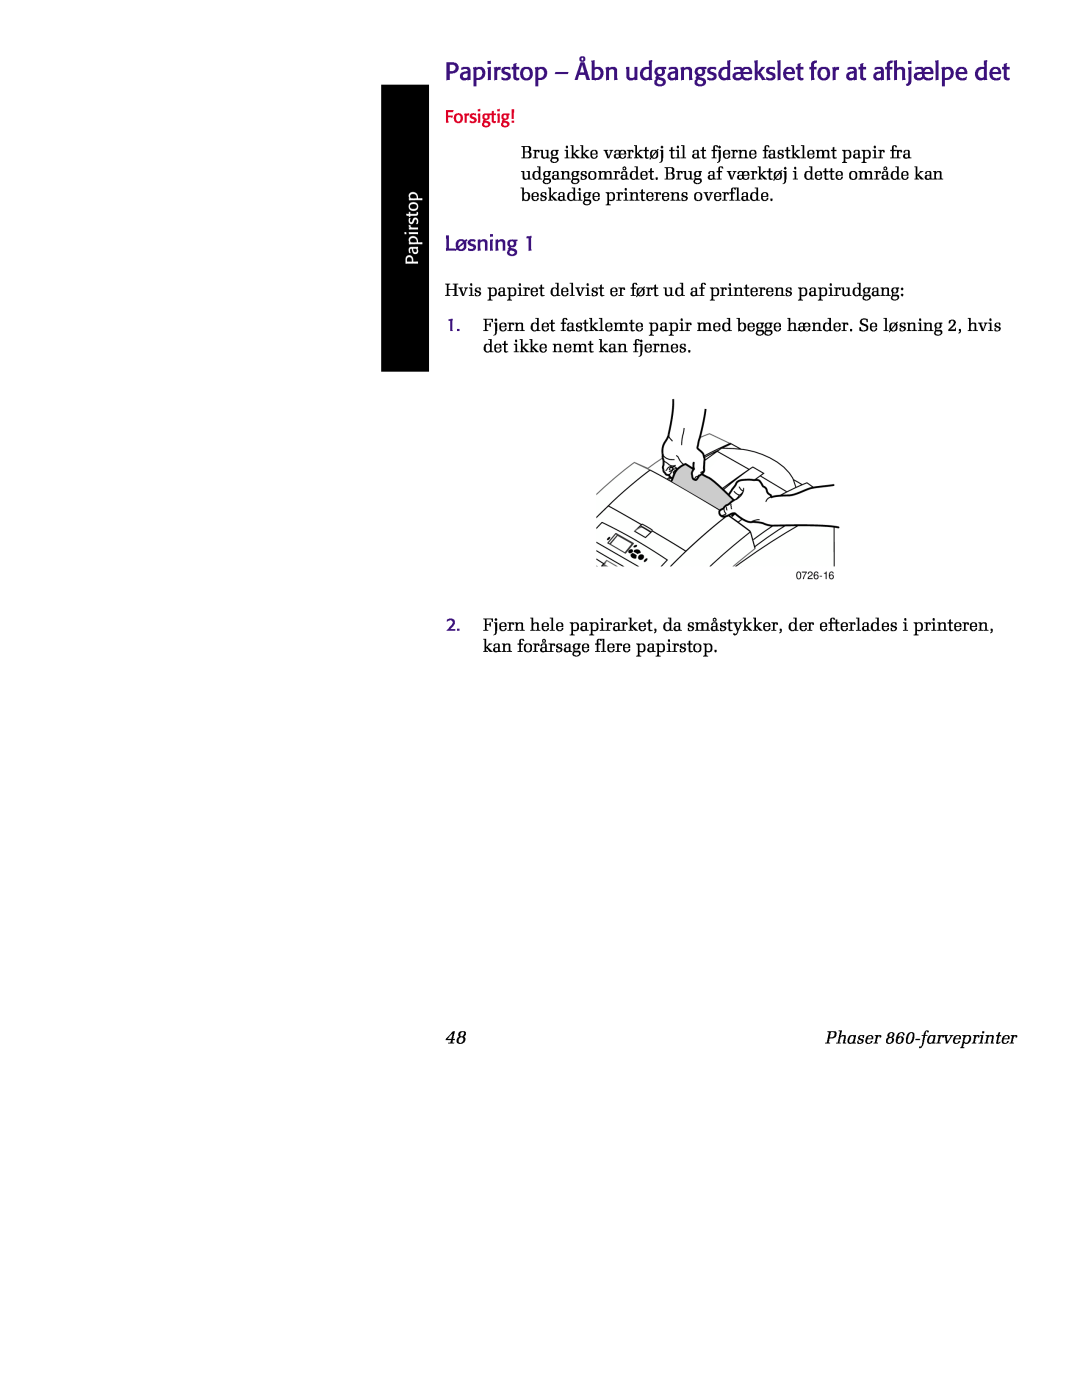 Tektronix manual Papirstop - Åbn udgangsdækslet for at afhjælpe det, Løsning, Forsigtig, Phaser 860-farveprinter 